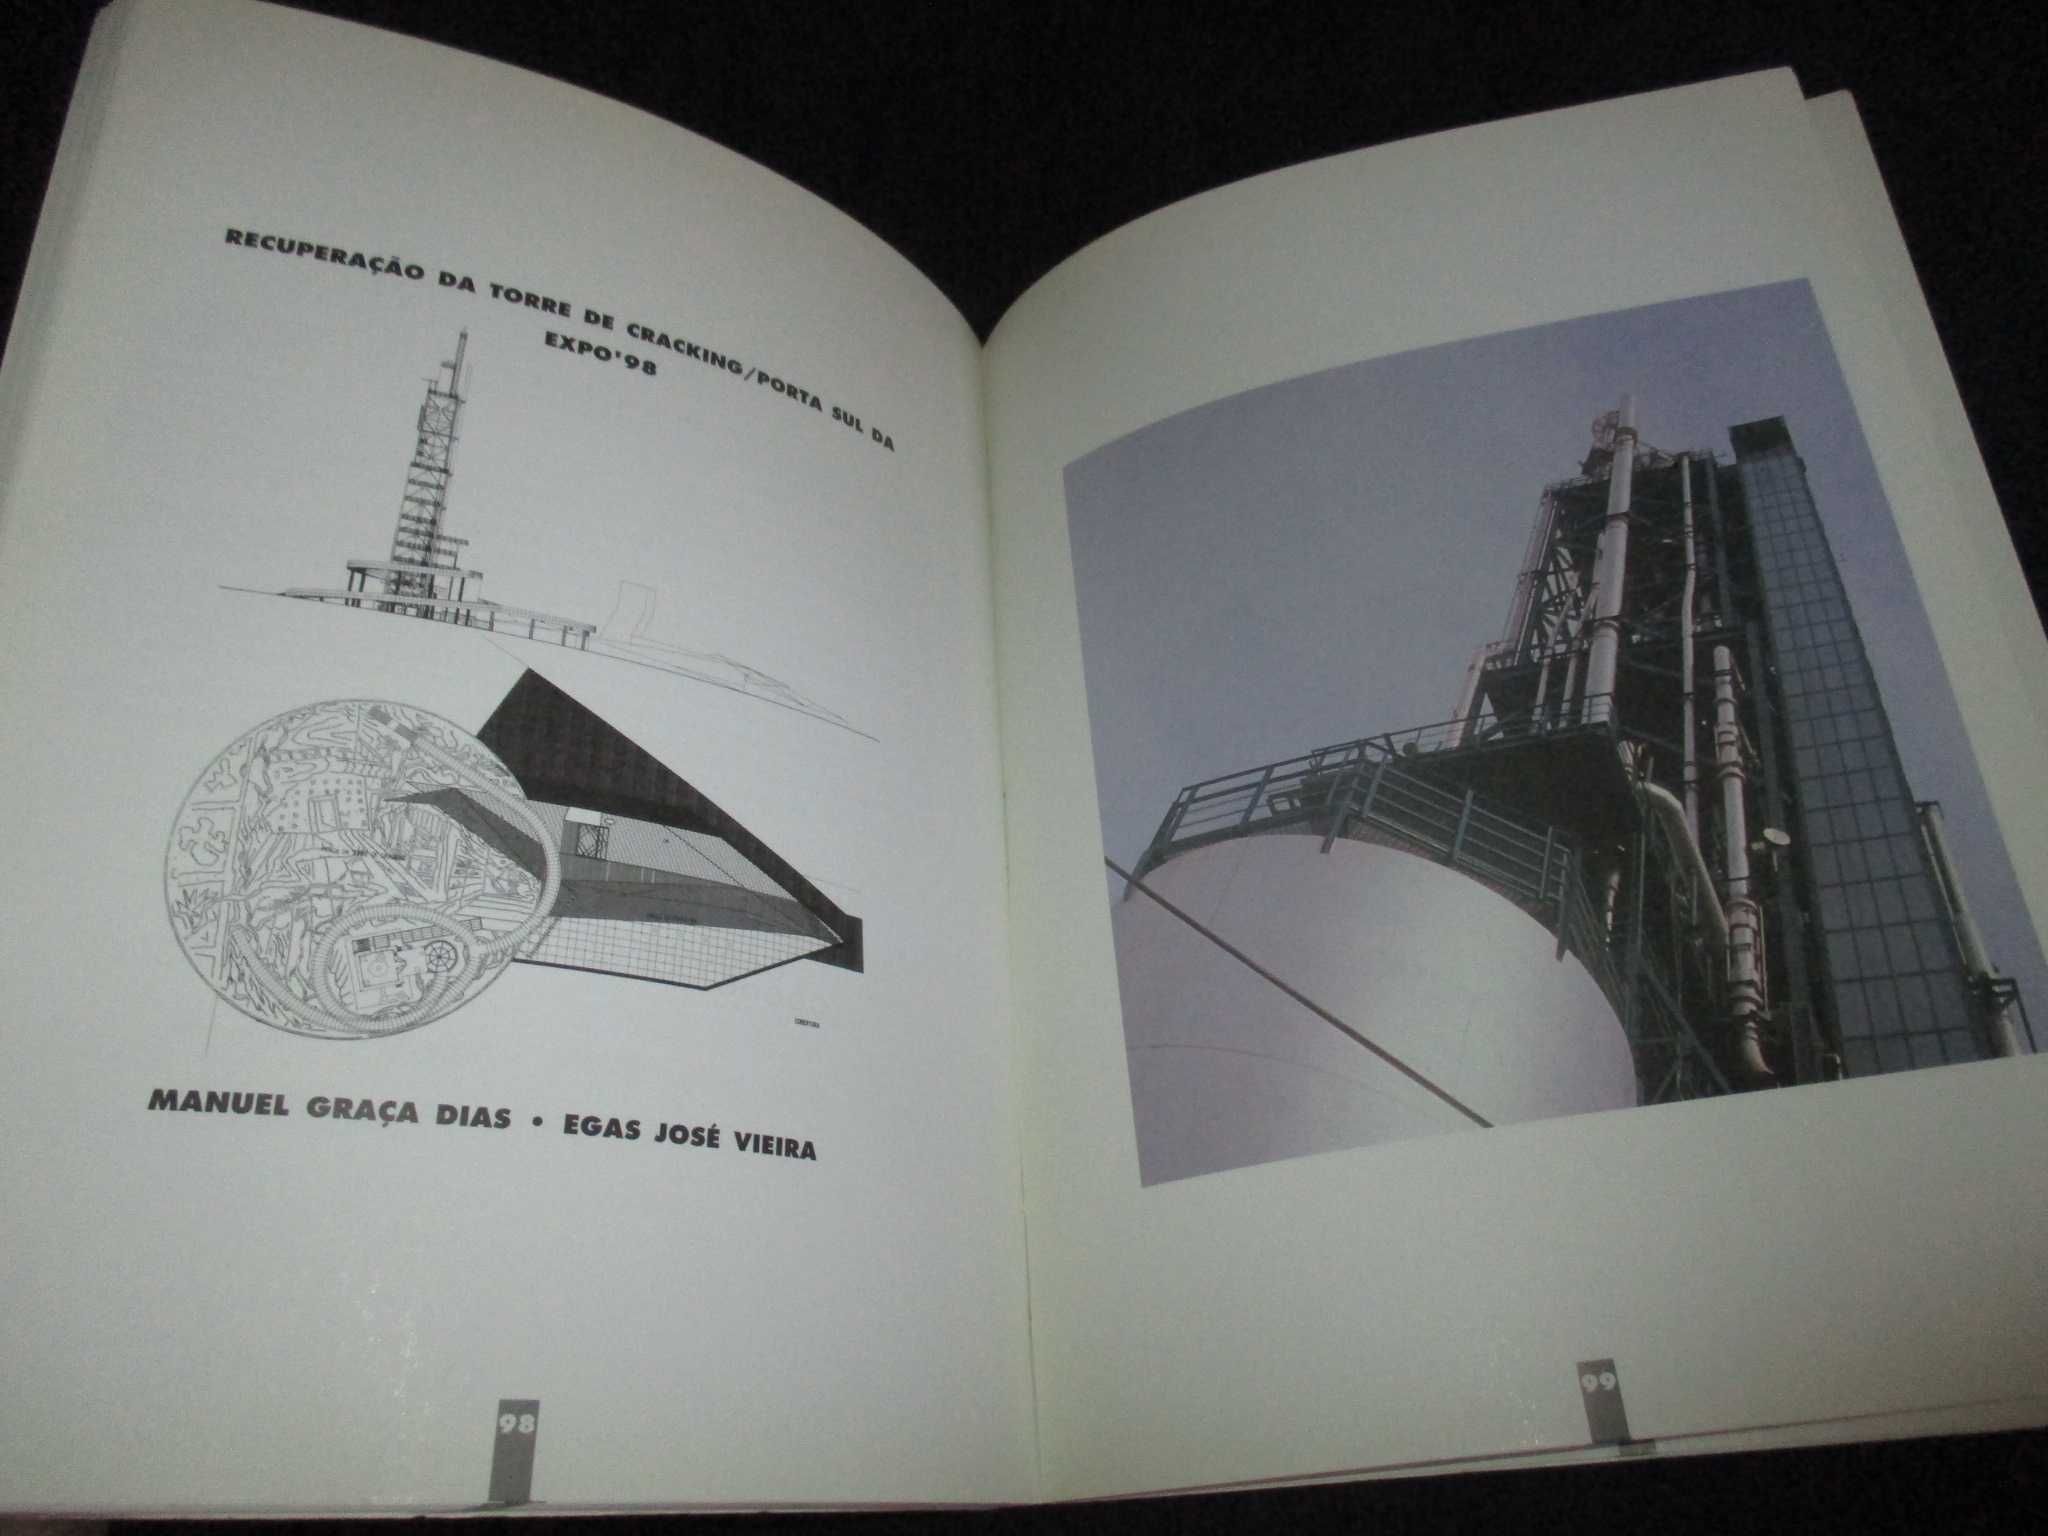 Livro 10 Arquitectos 20 Projectos Instituto de Arte Contemporânea